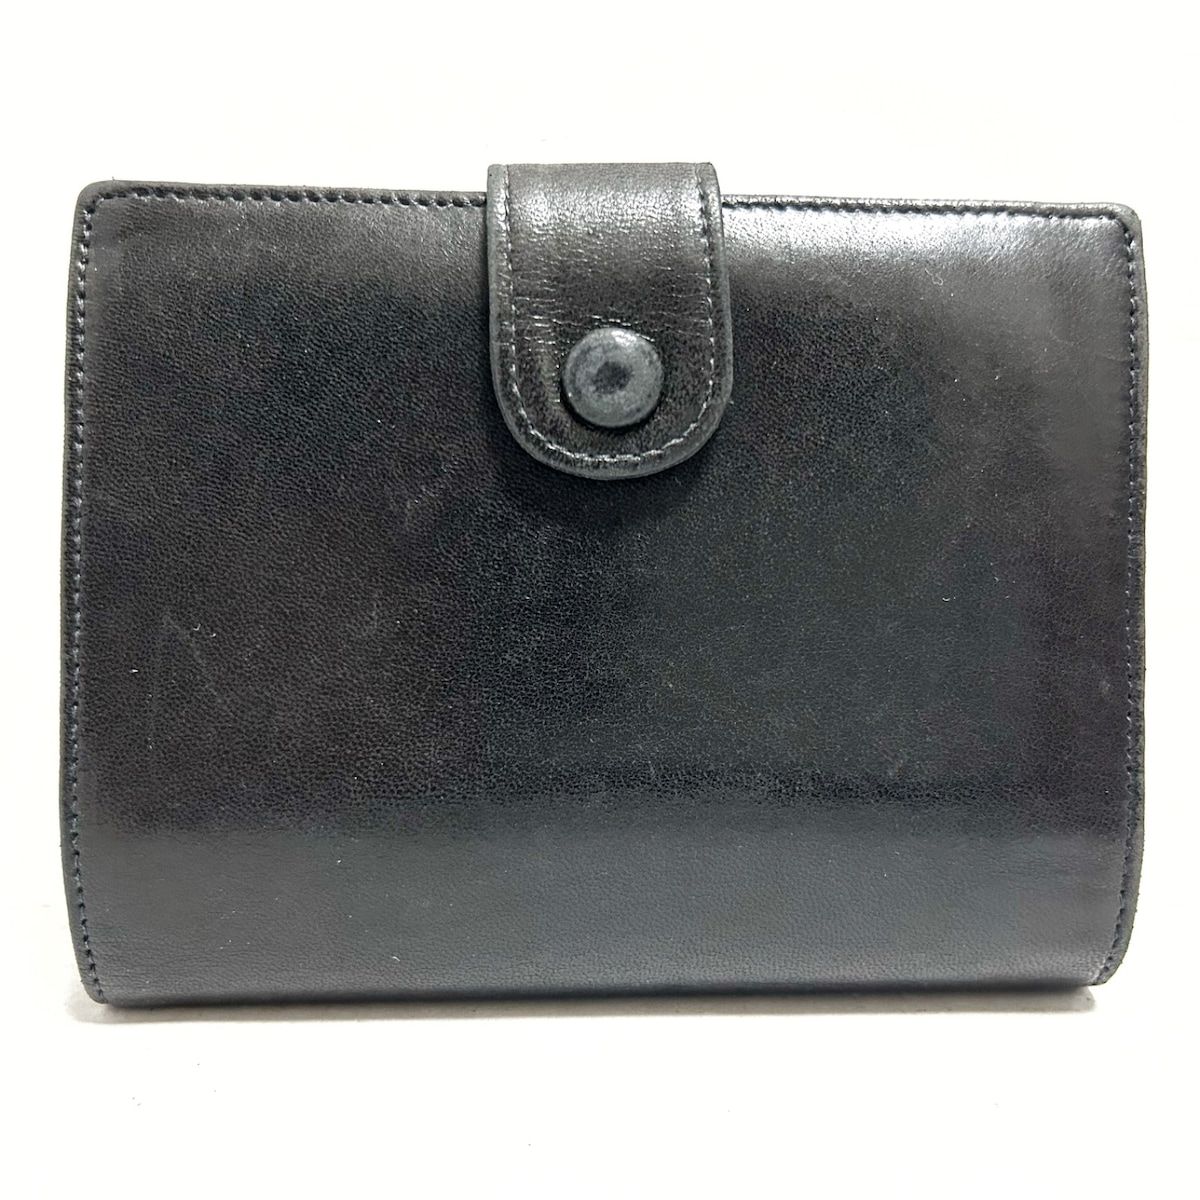 CHANEL(シャネル) 2つ折り財布 - 黒 ココマーク ラムスキン - メルカリ